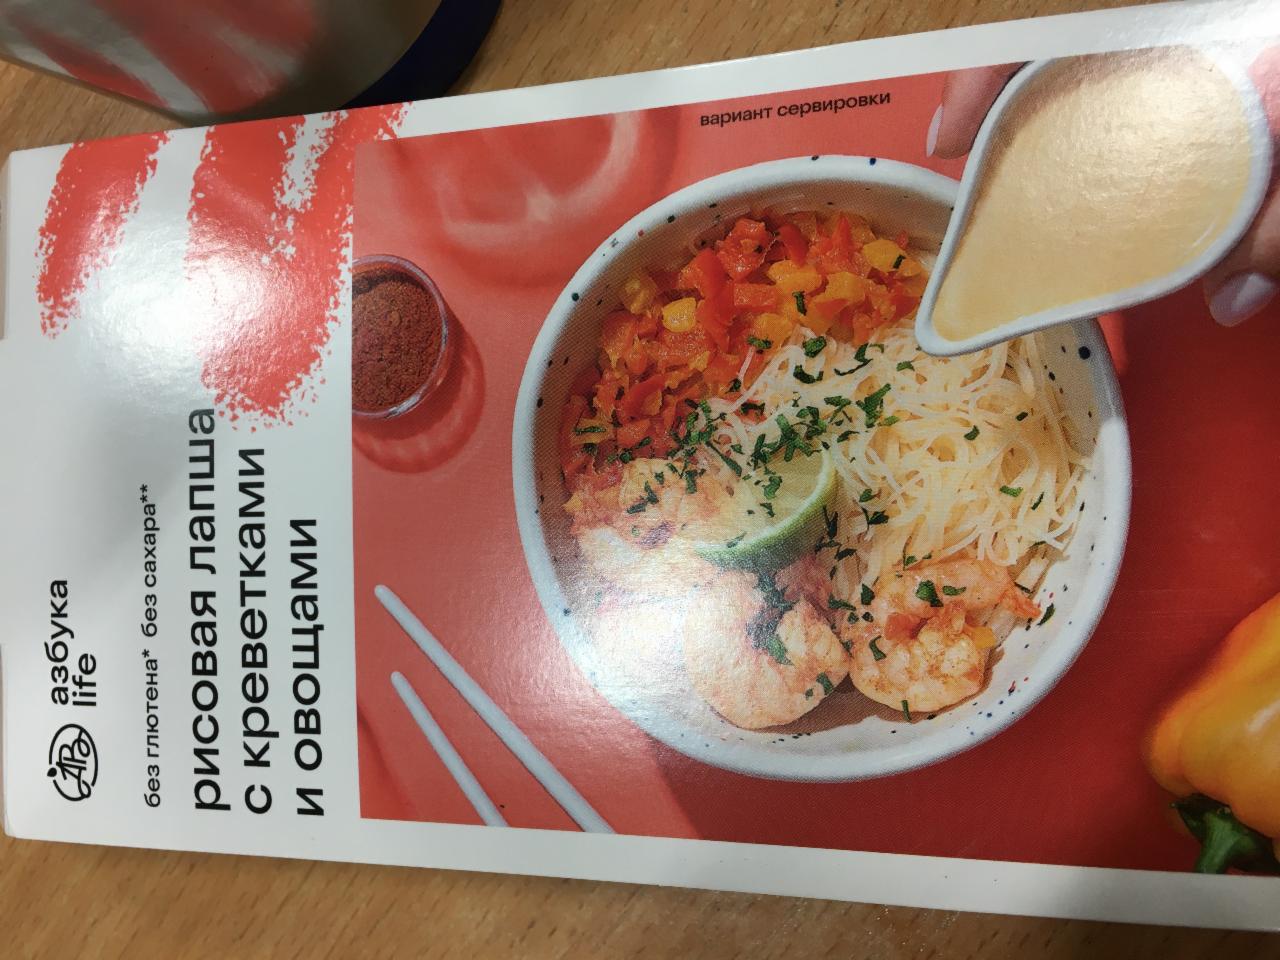 Фото - рисовая лапша с креветками Азбука вкуса